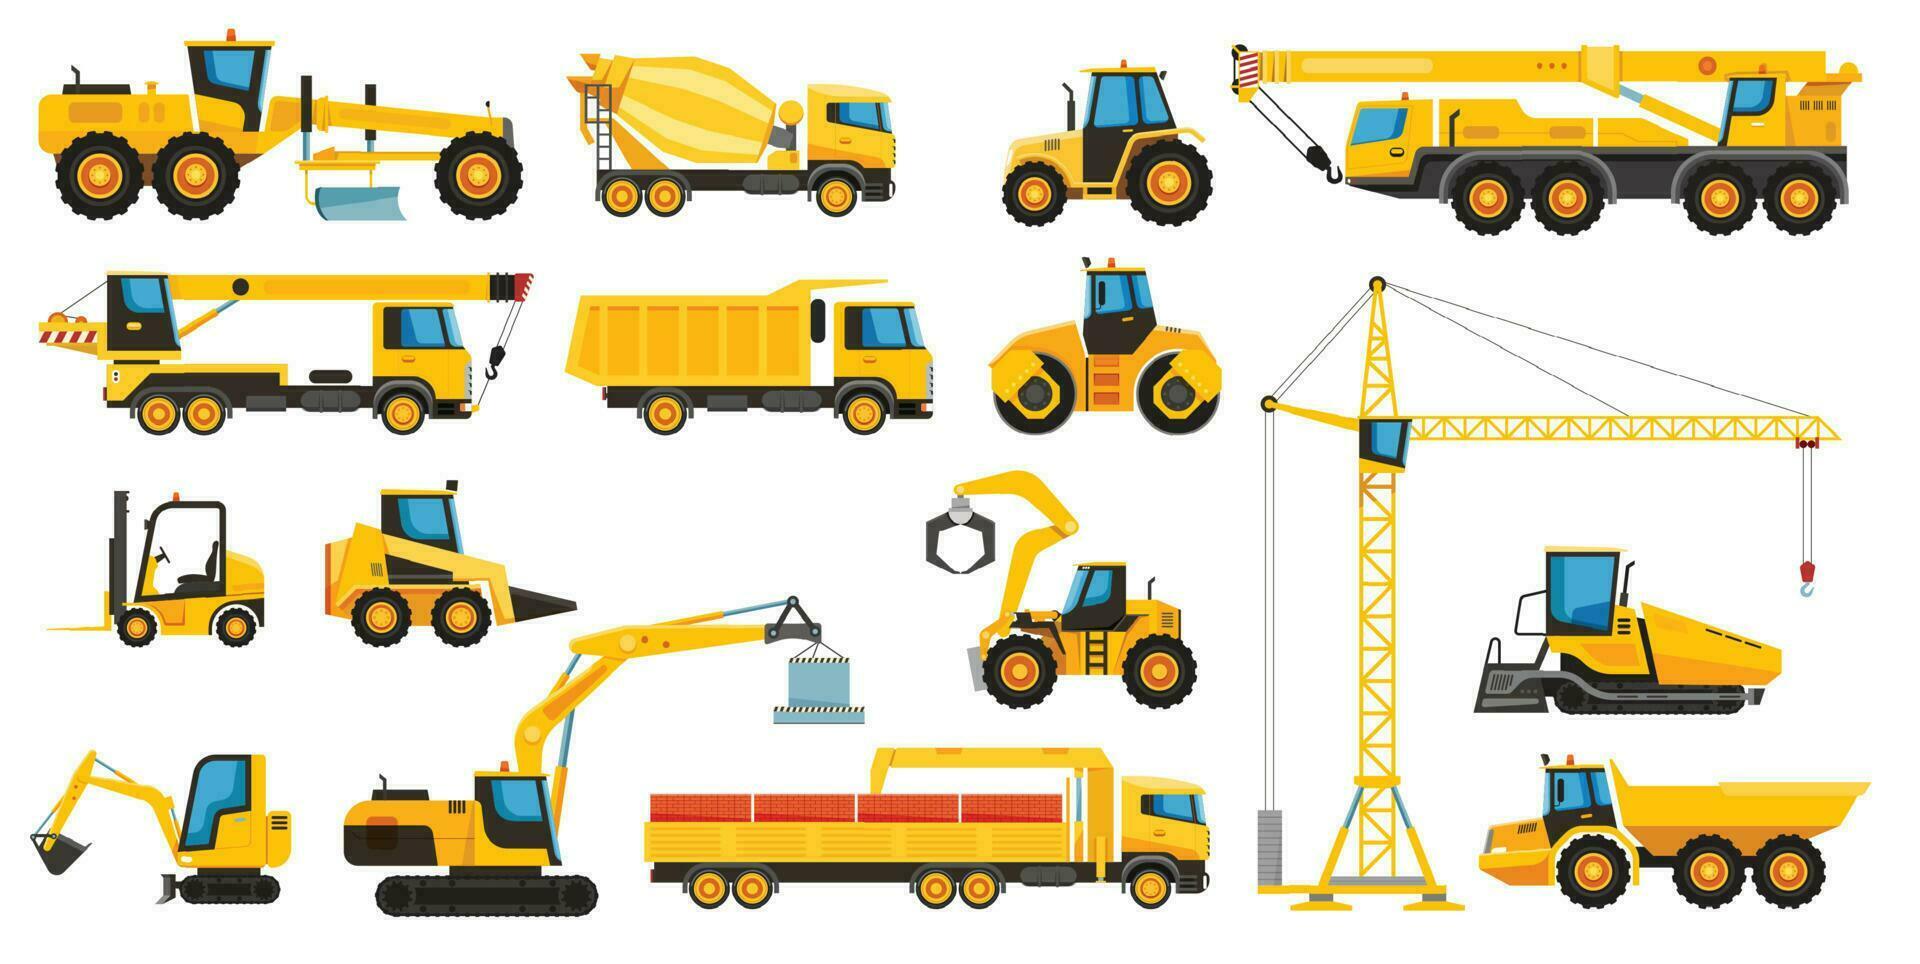 construcción pesado maquinaria, edificio equipo y vehículos máquina elevadora, excavador, grua, tractor, excavadora, excavador vector conjunto